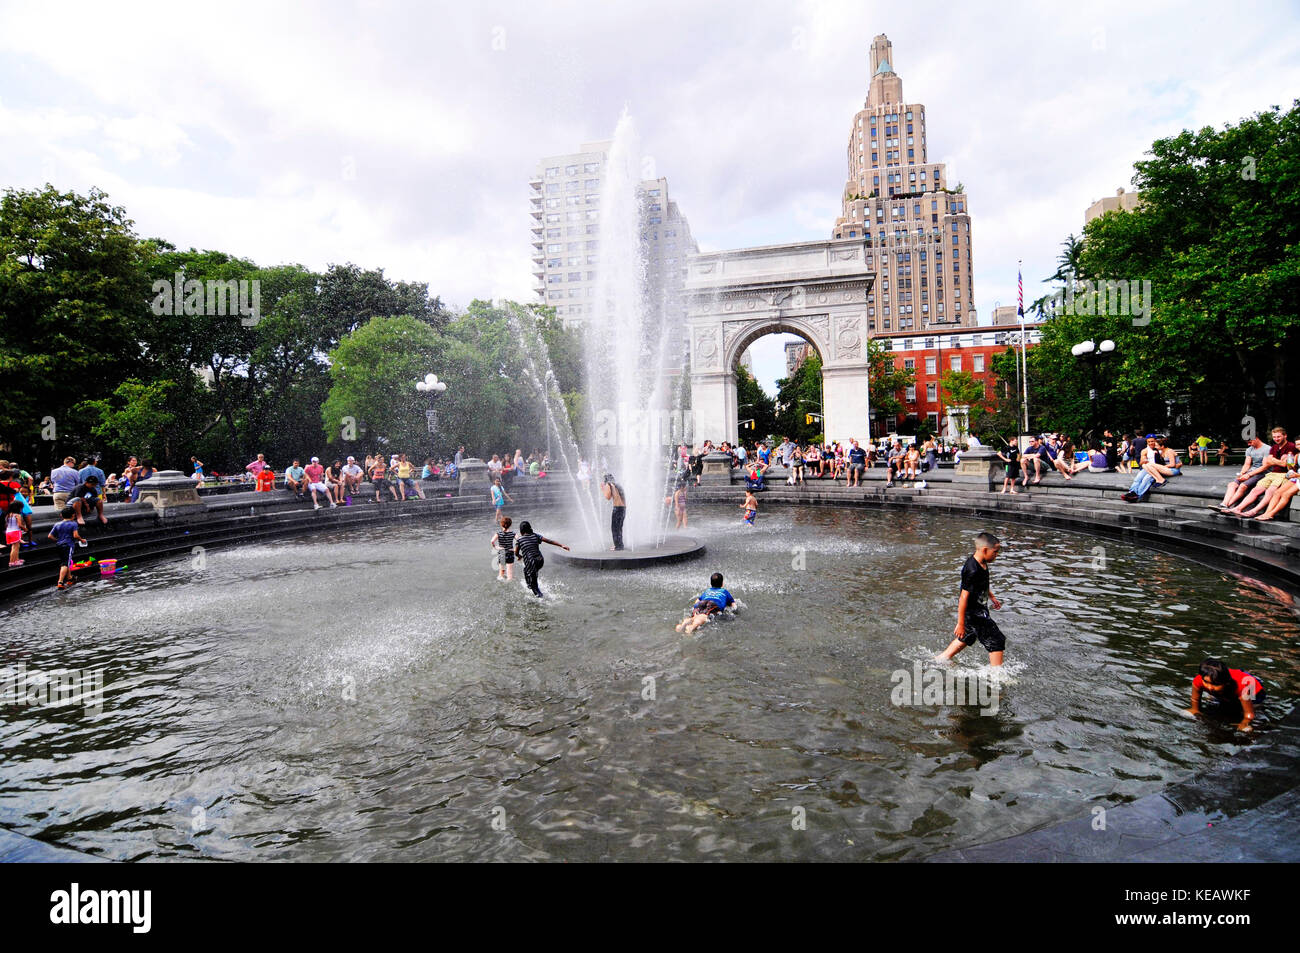 Washington Square Park ist in einem bekannten öffentlichen Park in Greenwich Village, Manhattan. Stockfoto